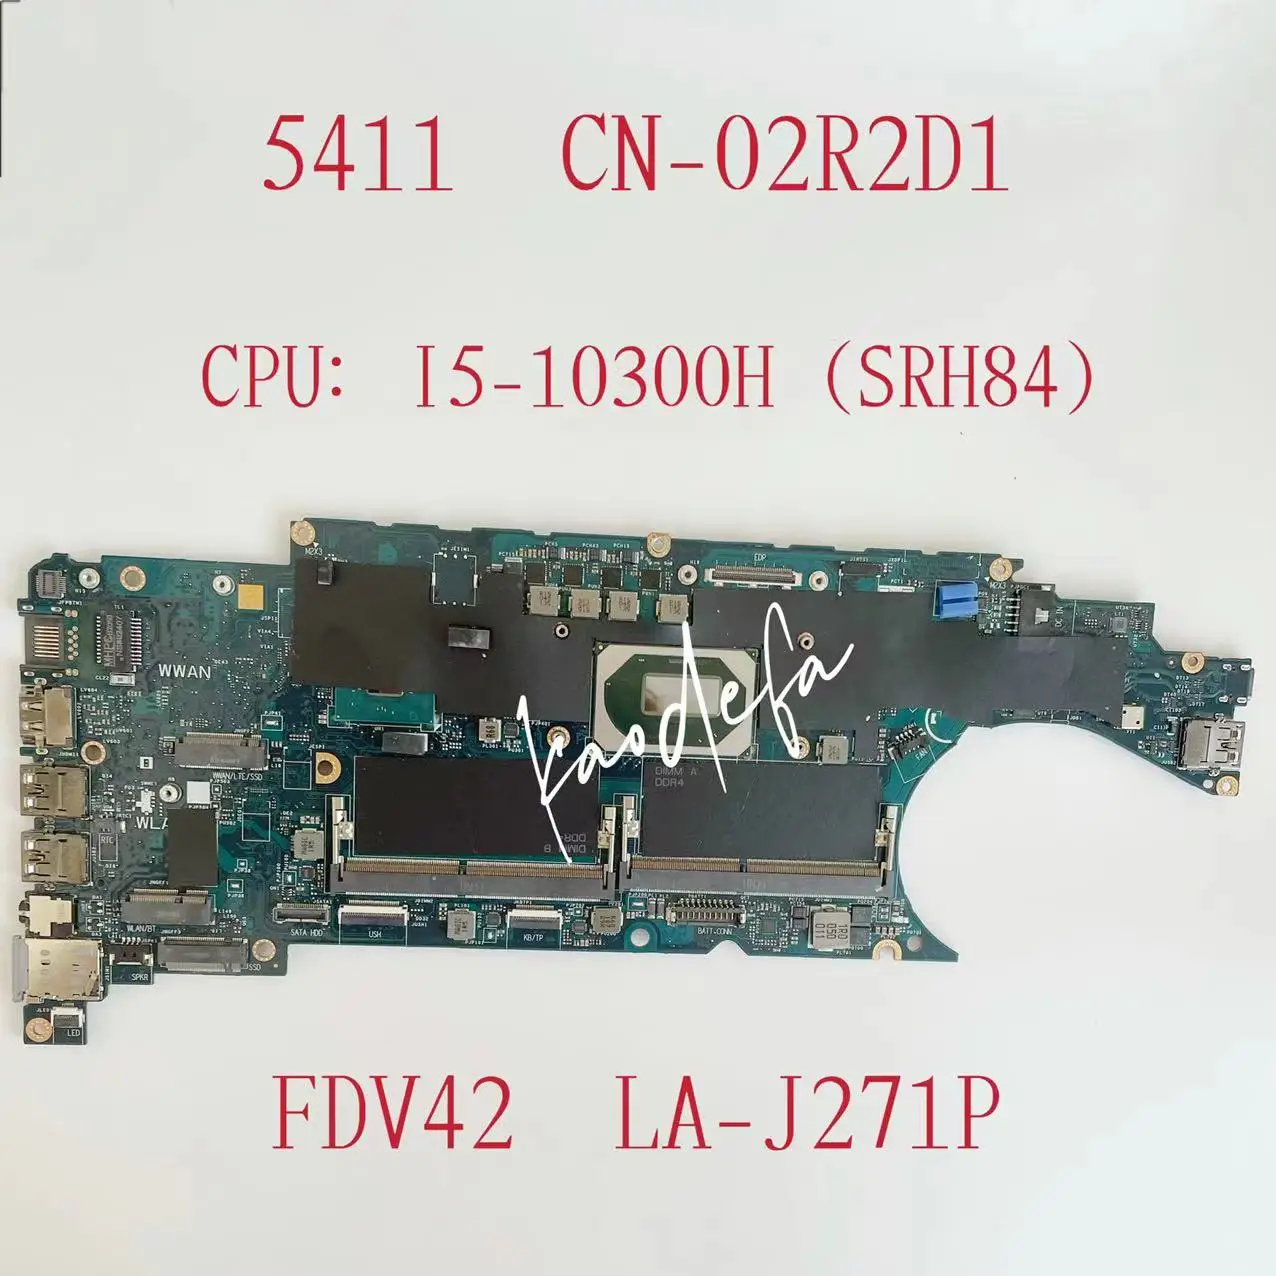 

FDV42 LA-J271P Mainboard For Dell Latitude 5411 Laptop Motherboard CPU:I5-10300H SRH84 DDR4 CN-02R2D1 02R2D1 2R2D1 Test OK